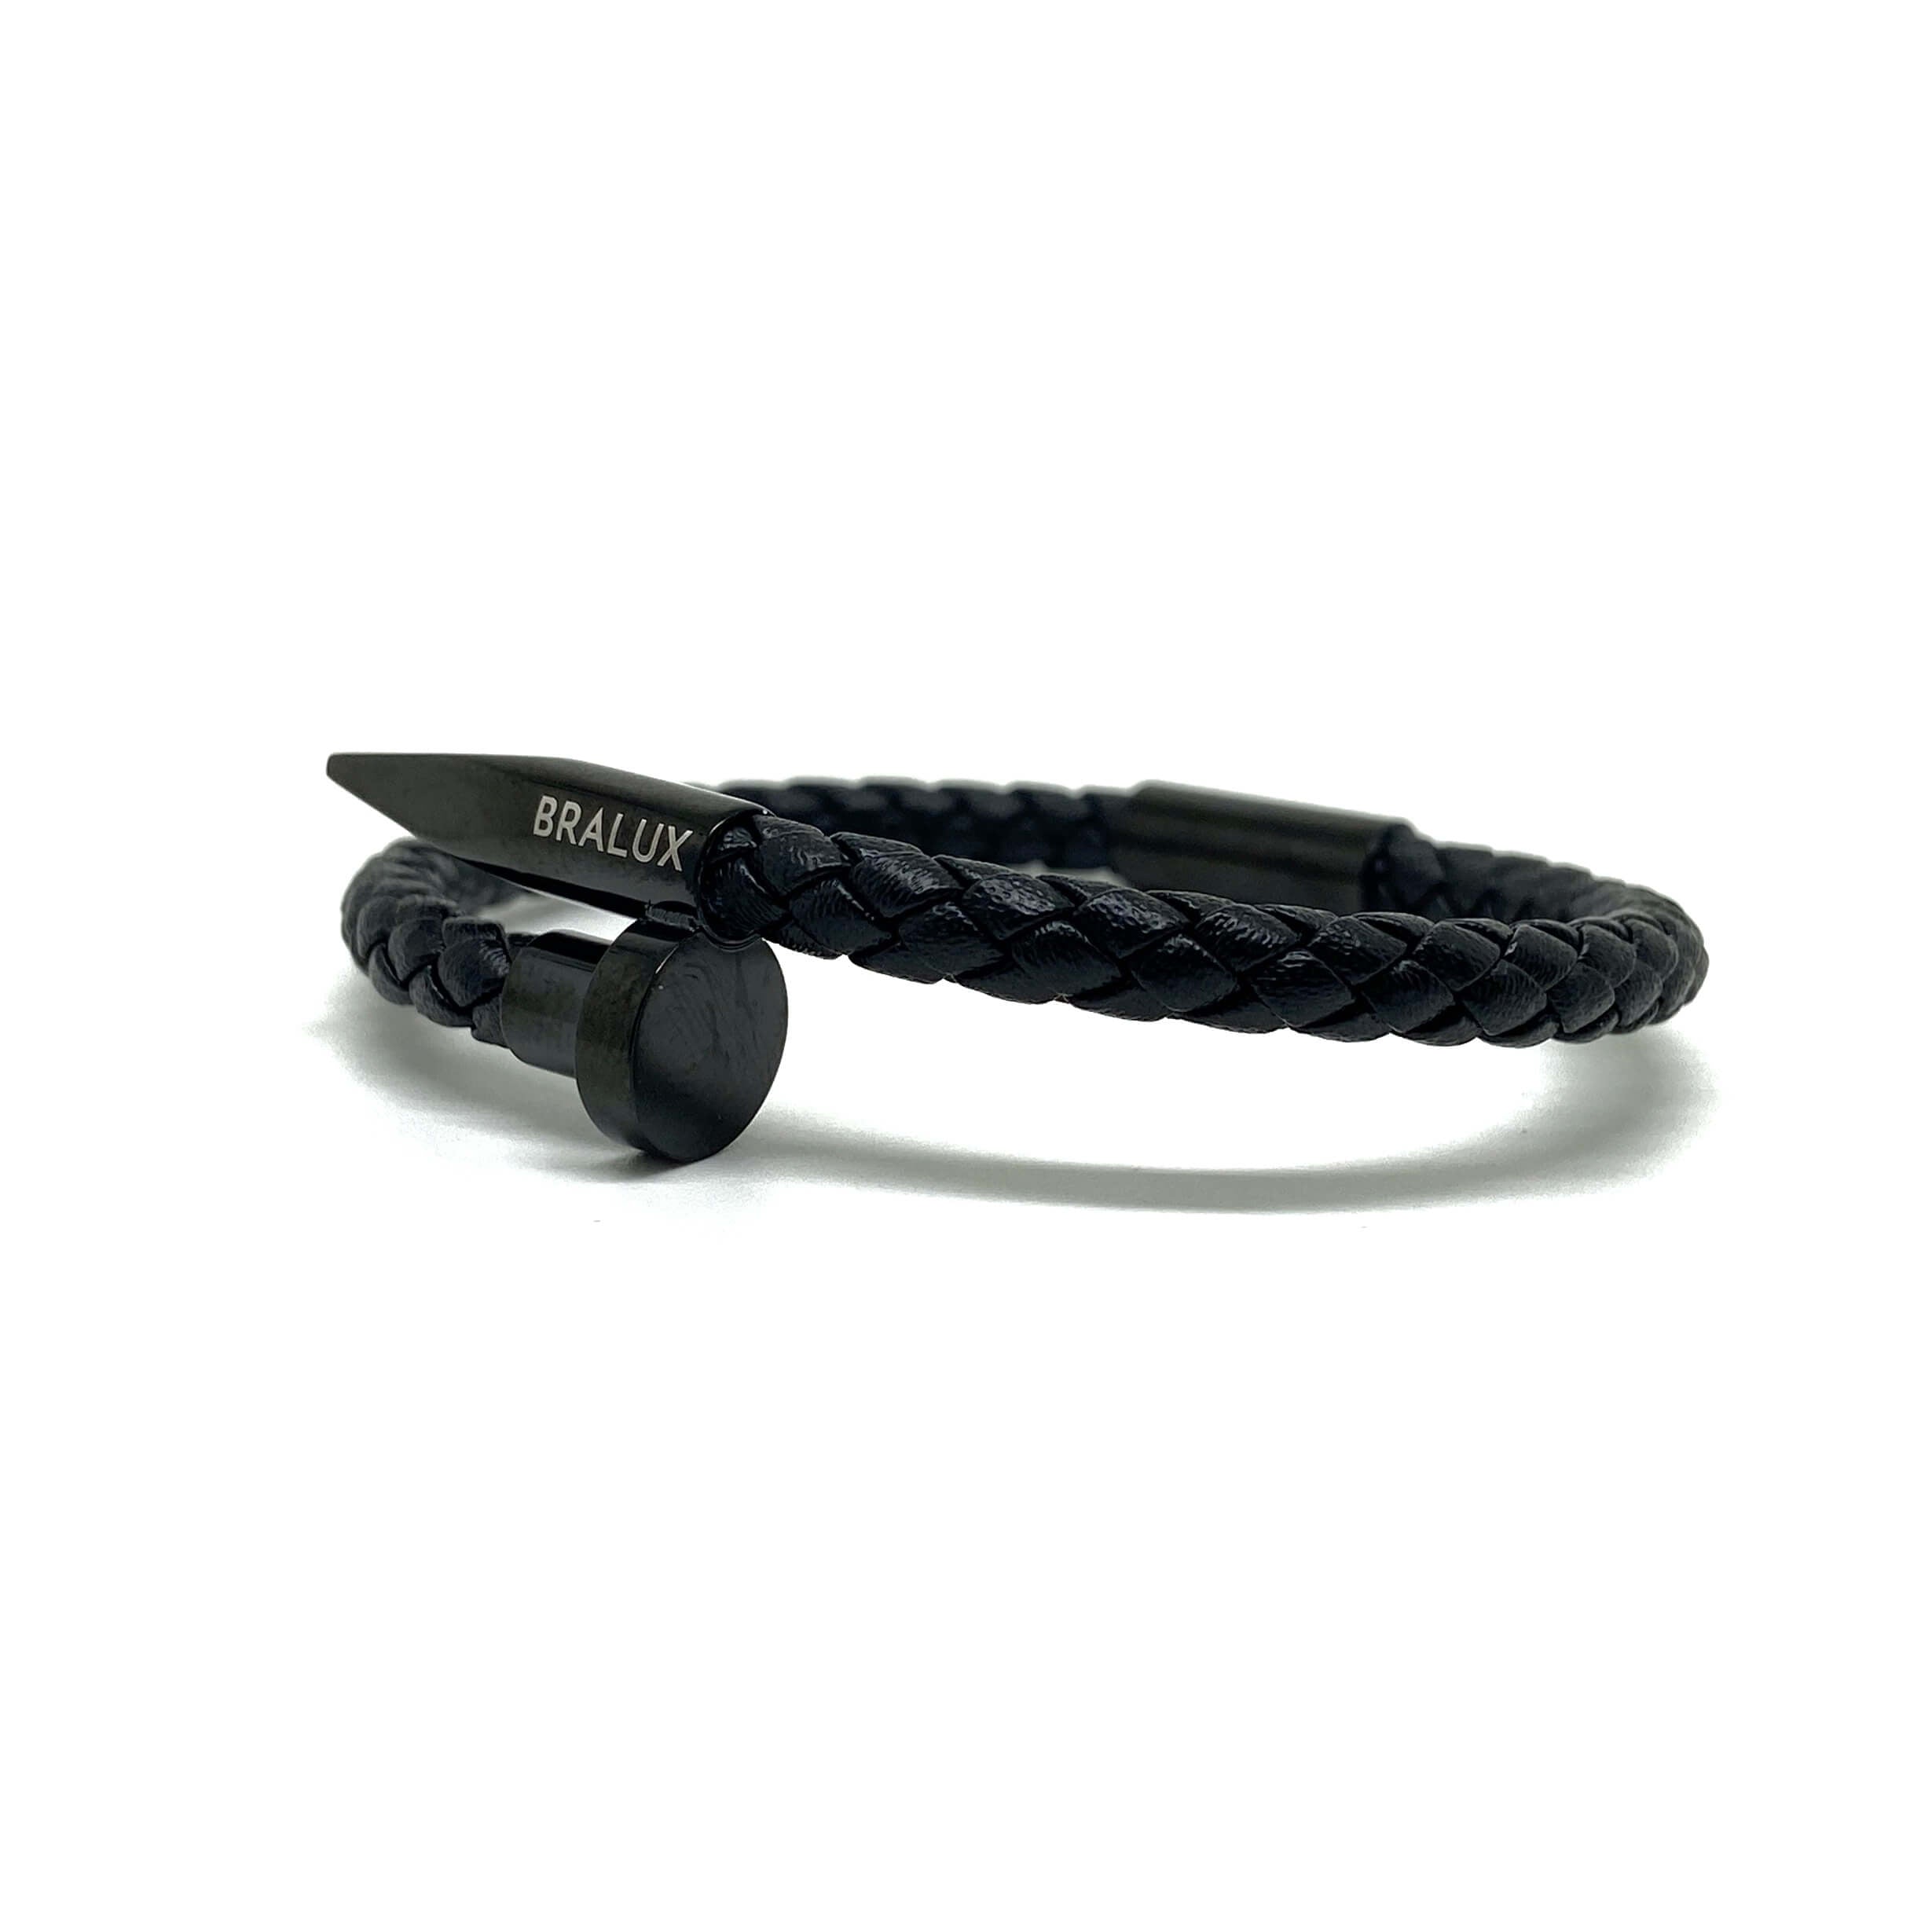 The Full Black Leather Bracelet